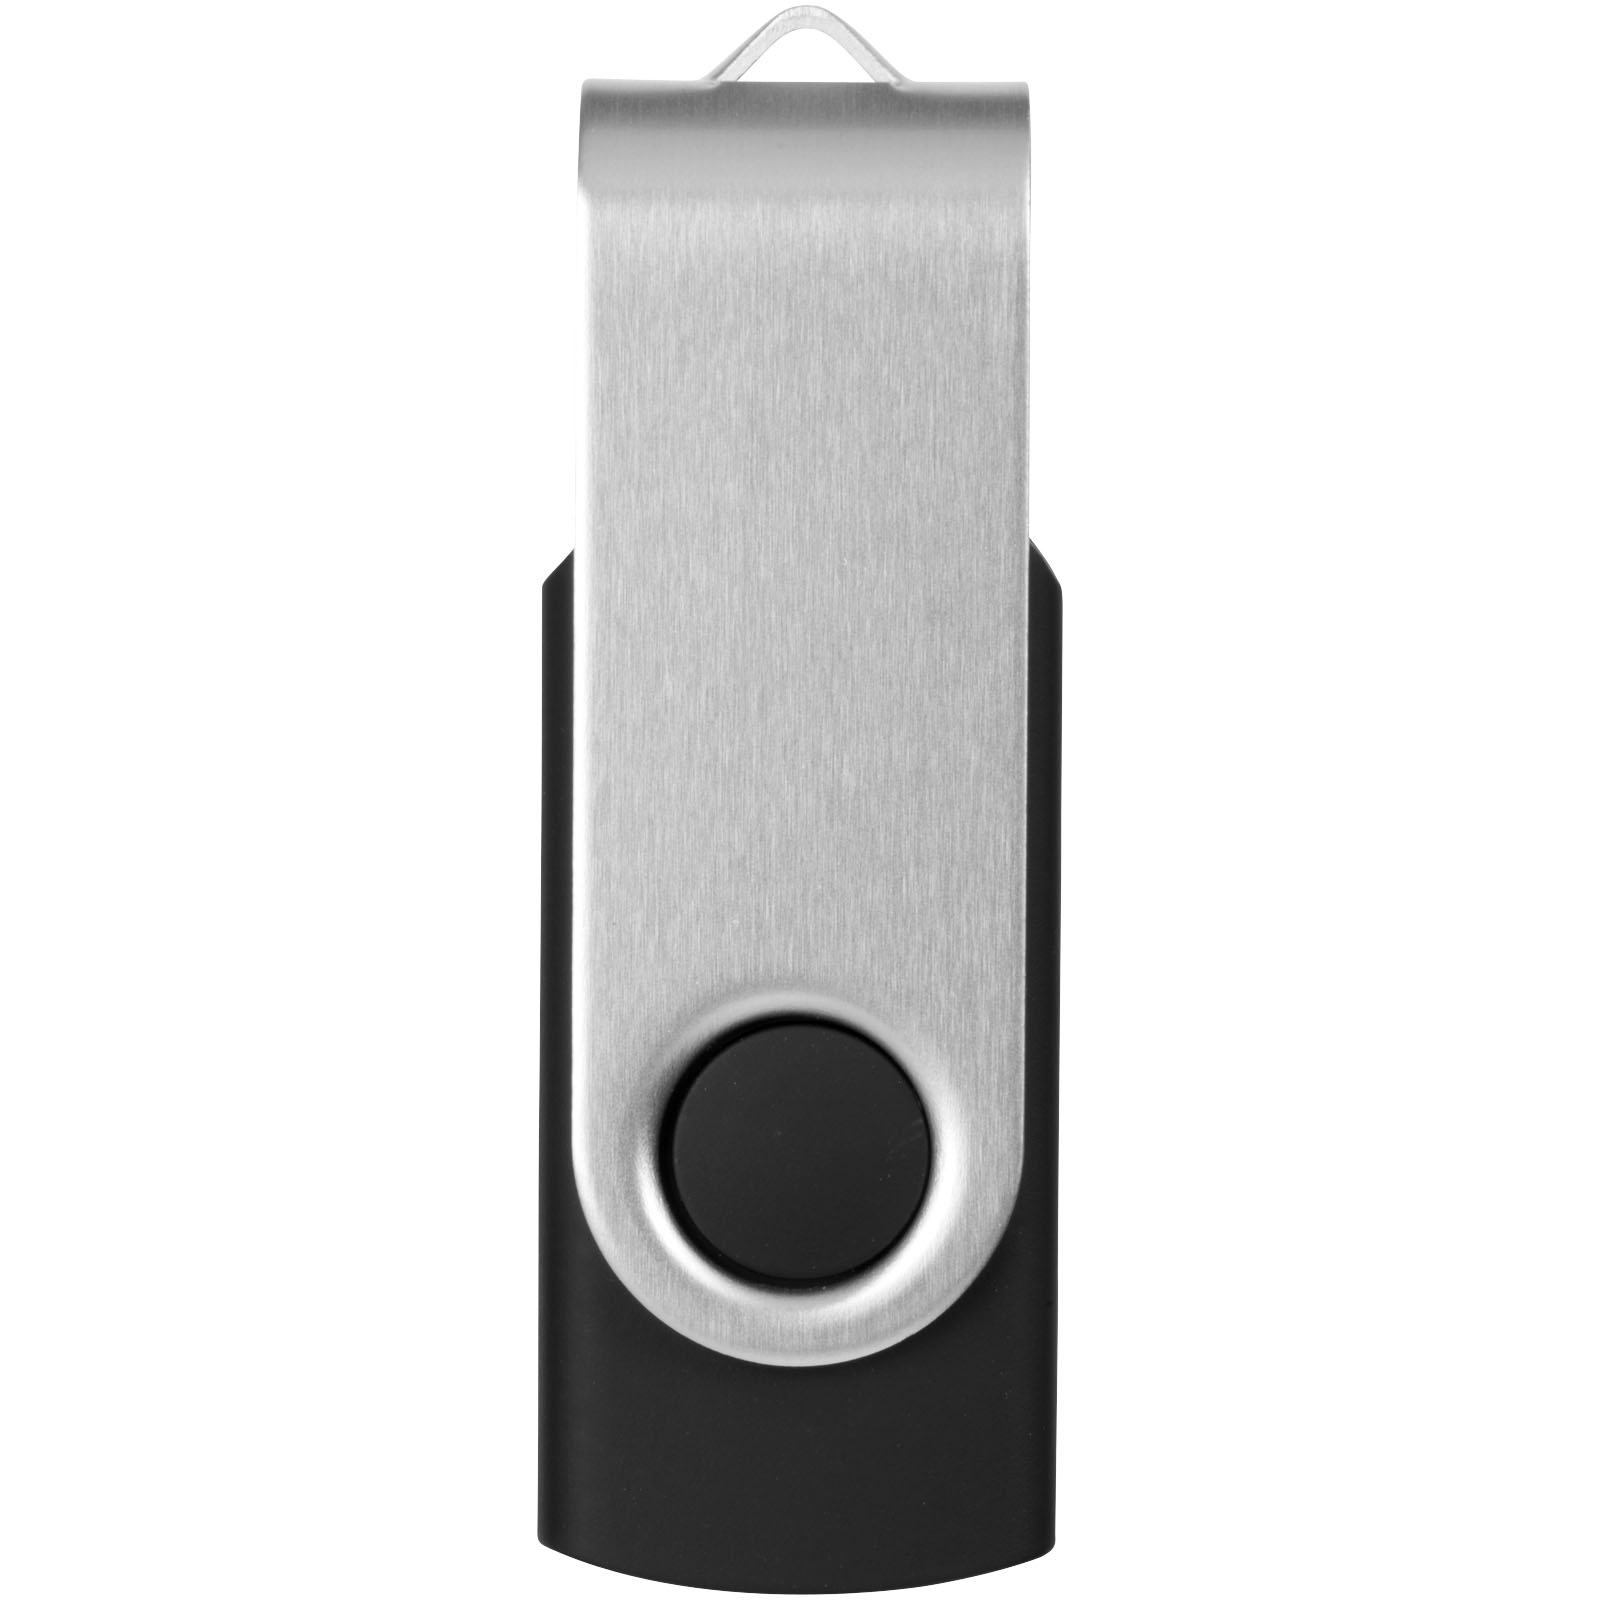 Clés USB publicitaires - Clé USB 2 Go Rotate-basic - 3